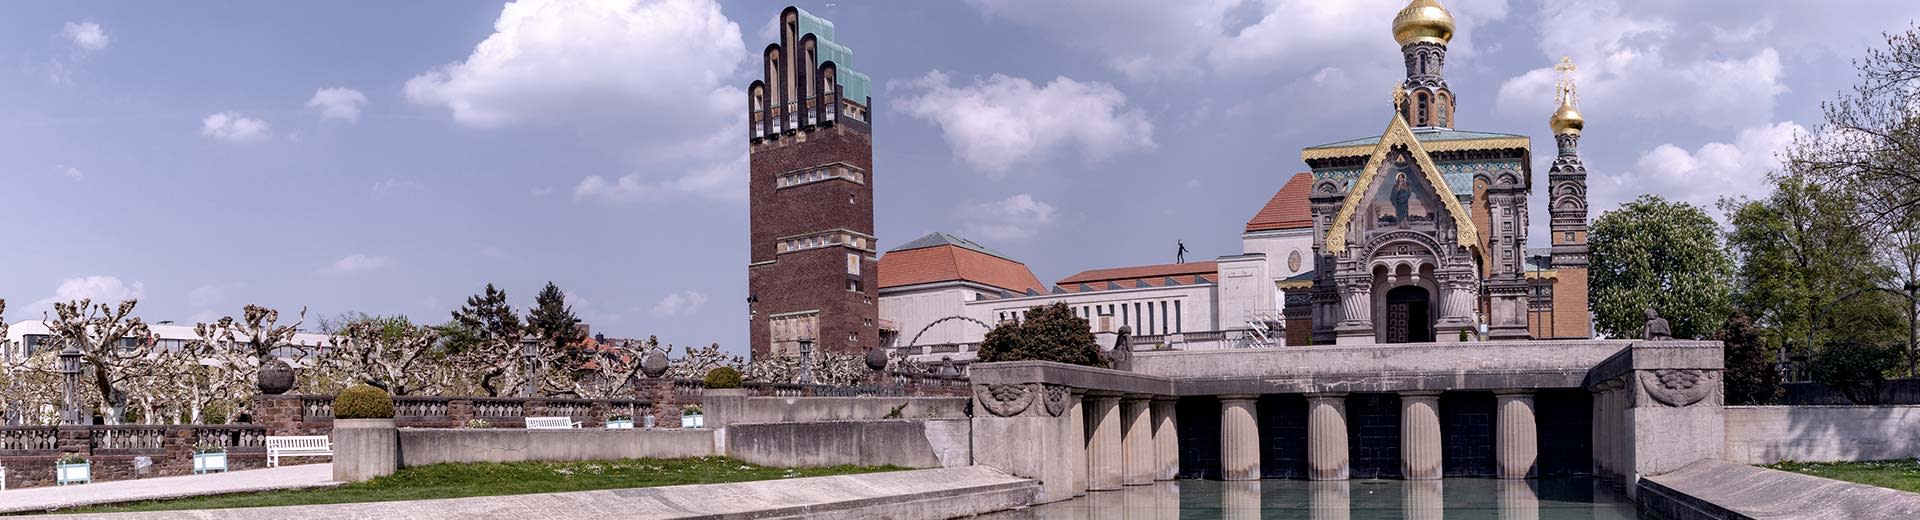 Las iglesias y edificios históricos de Darmstadt se sientan junto a un canal en un día claro y soleado.